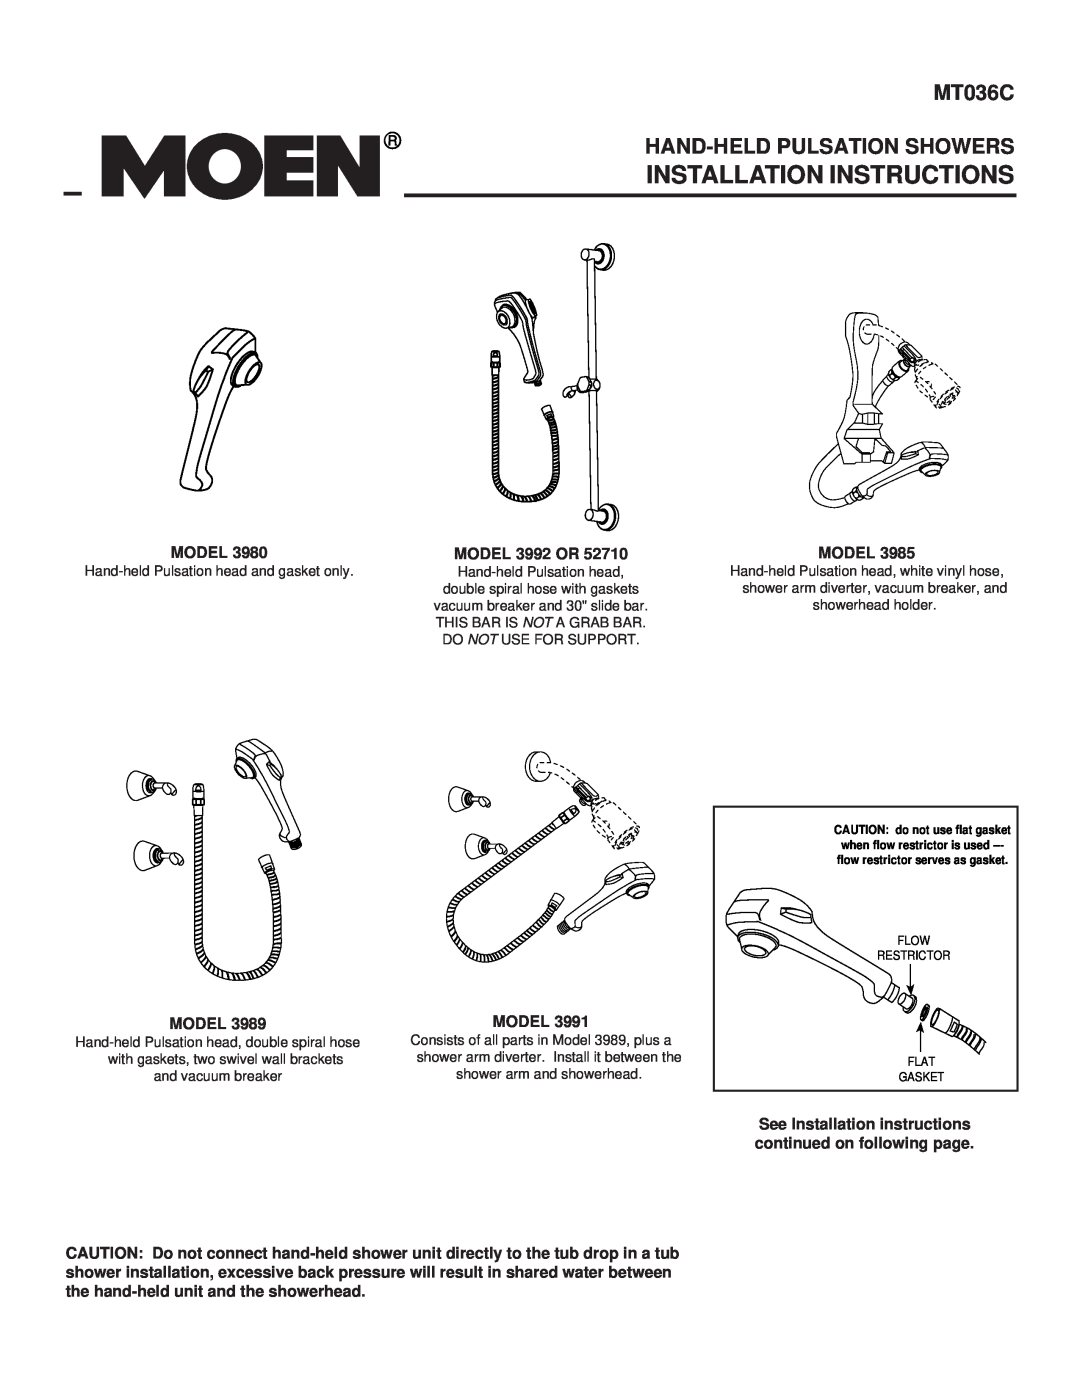 Moen MT036C installation instructions Installation Instructions, Hand-Held Pulsation Showers 